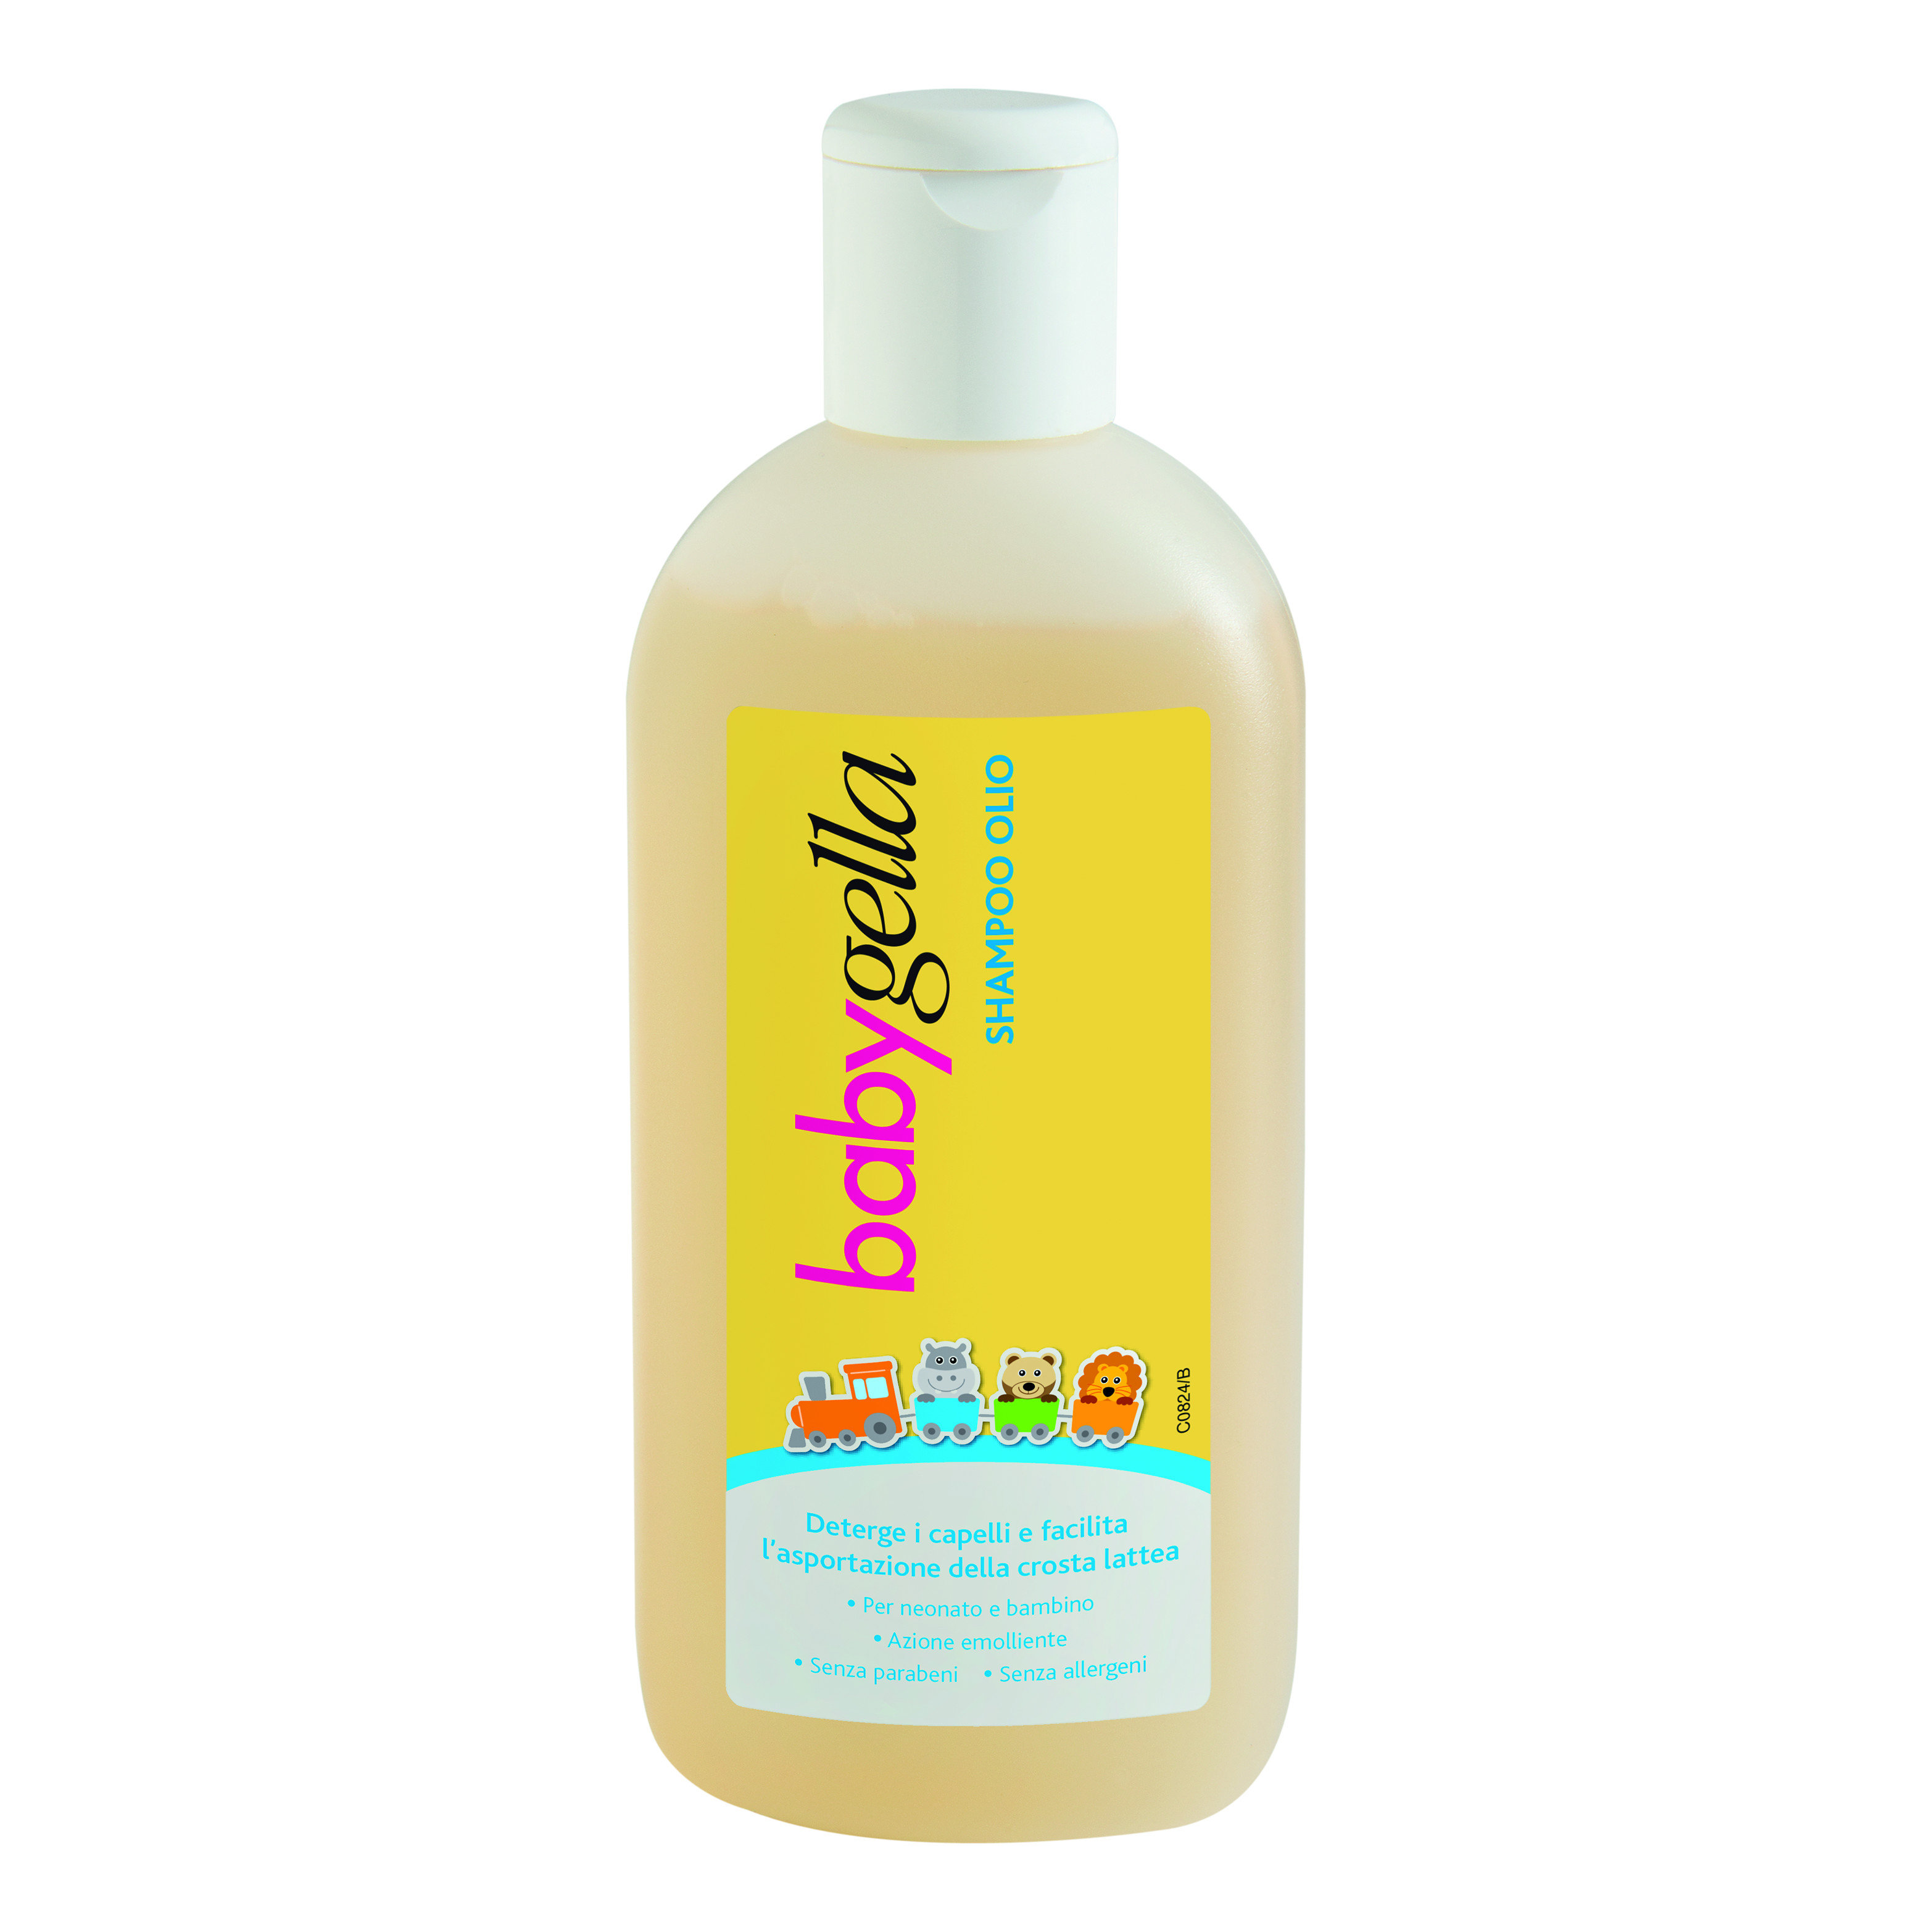 Babygella shampoo olio 150ml a € 4,85 su Farmacia Pasquino